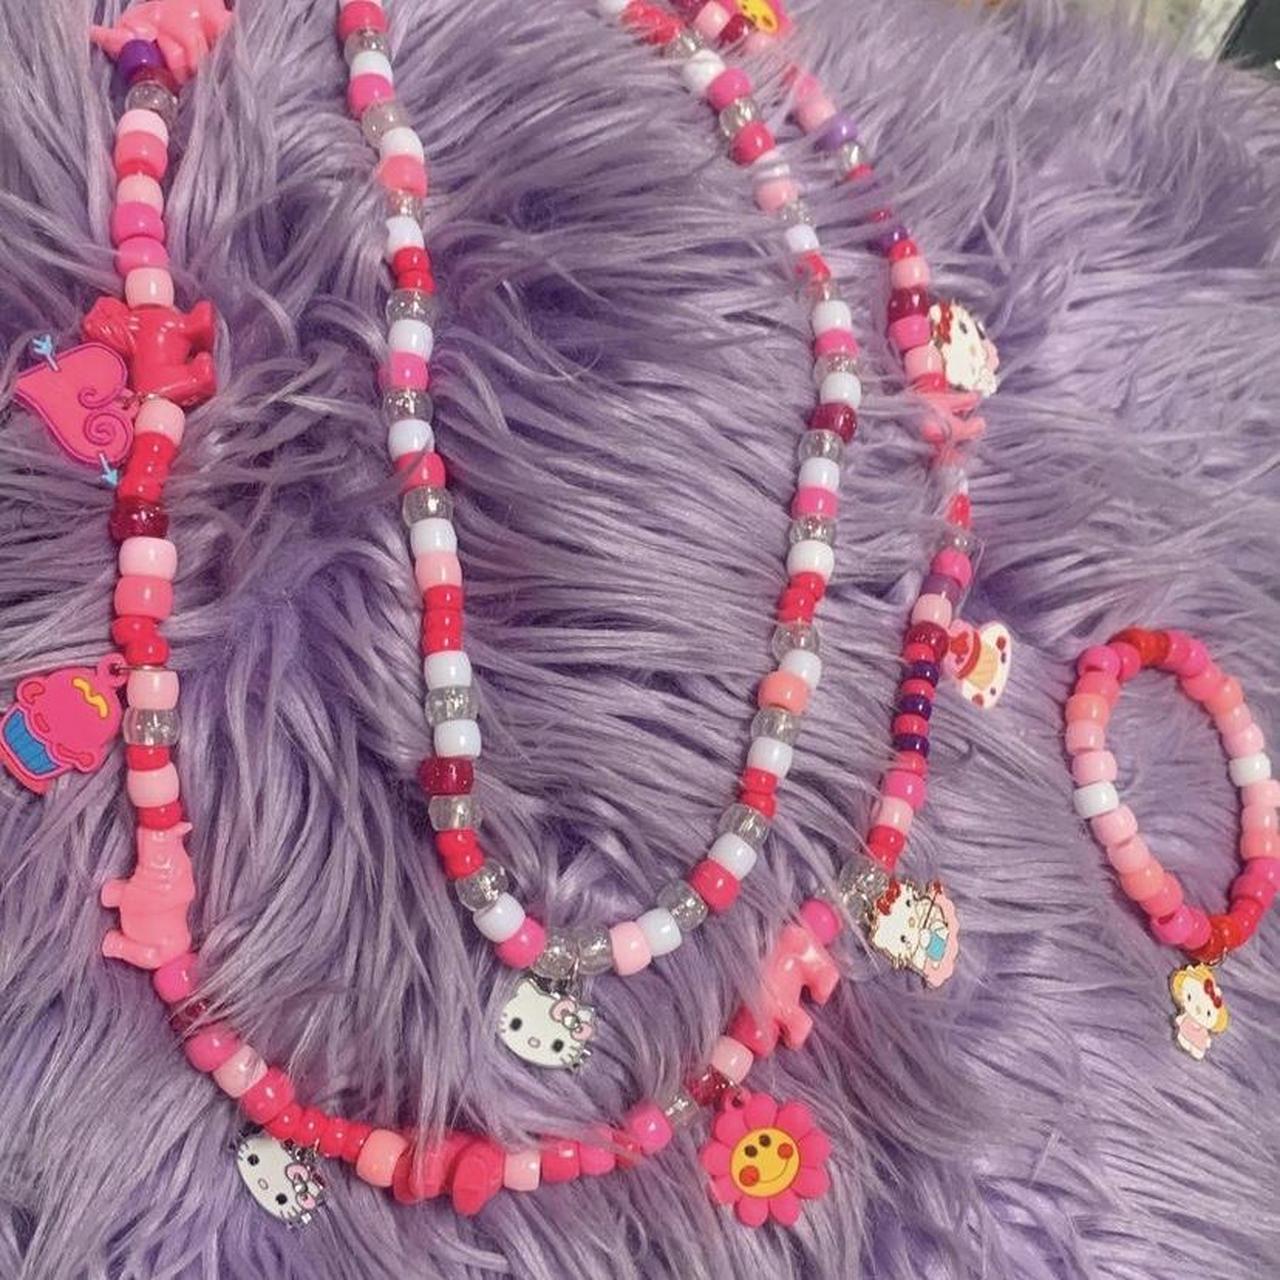 HELLO KITTY BRACELET 💖 she's so cute ! 💓 HIGH - Depop  Diy kandi  bracelets, Bracelets handmade beaded, Beads bracelet design